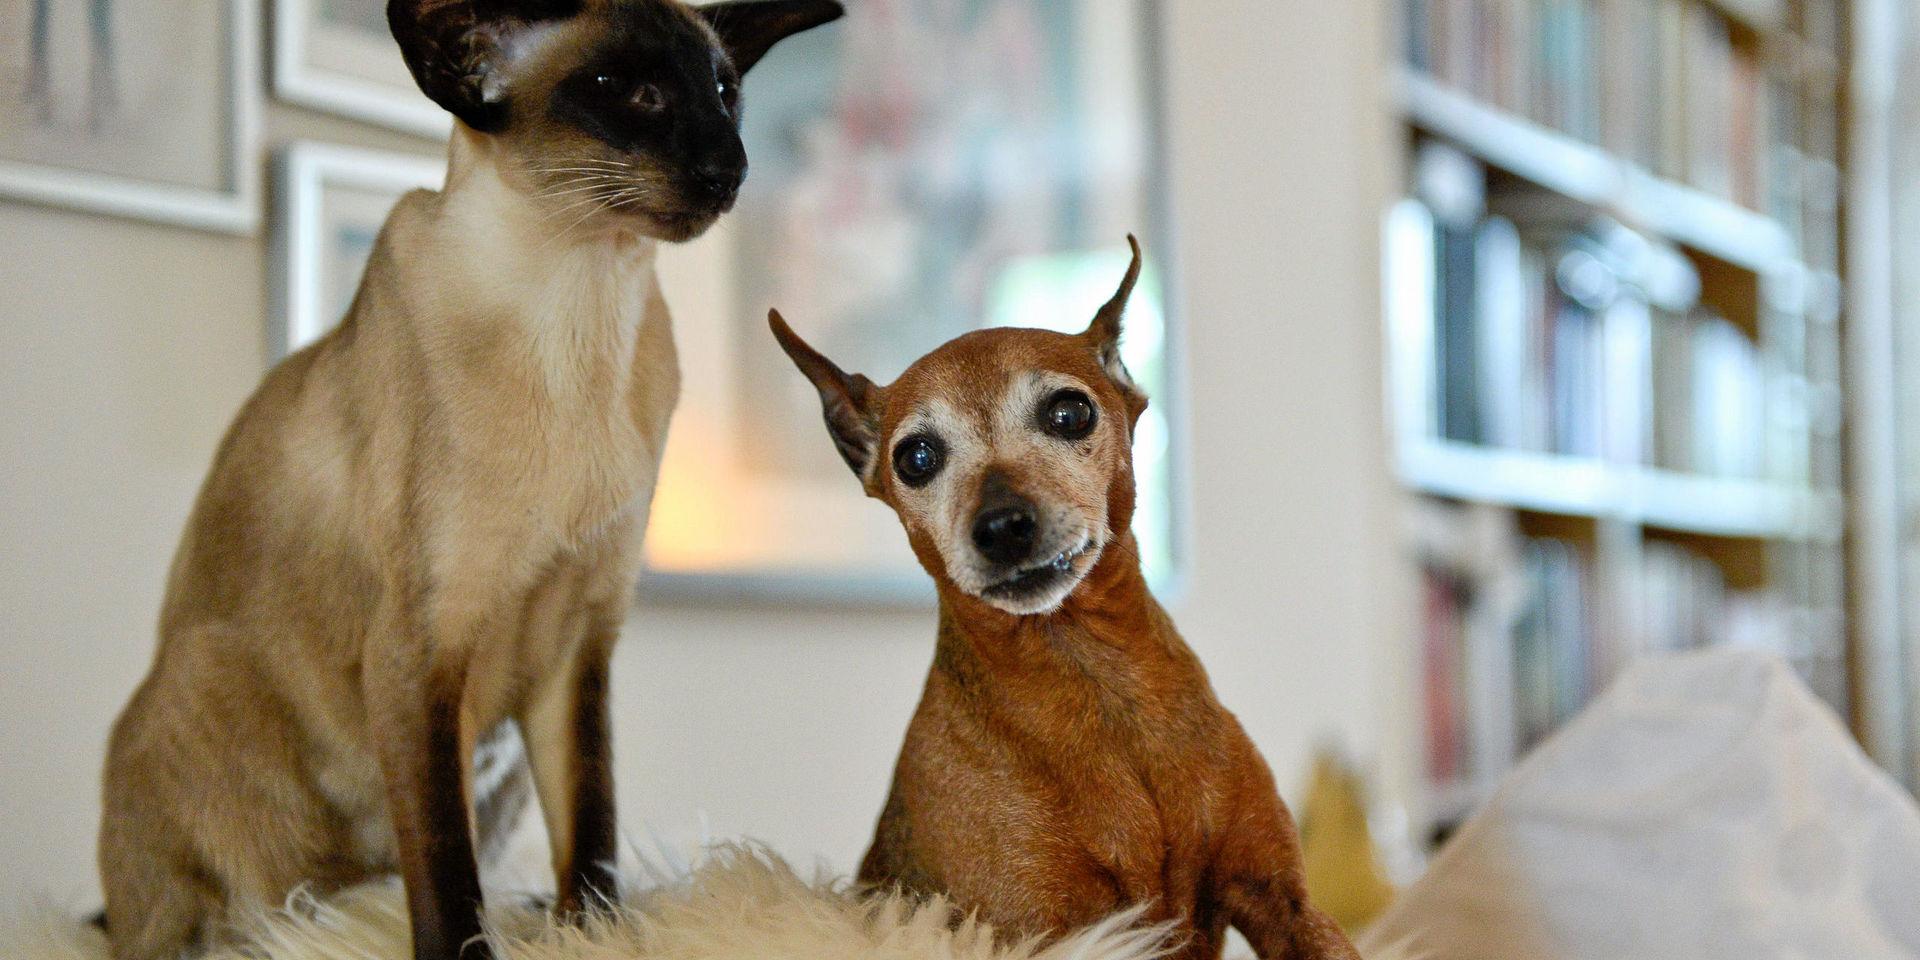 Älskade. Hjälp din katt och hund att komma hem genom att id-märka och registrera den!, skriver insändarskribenten.